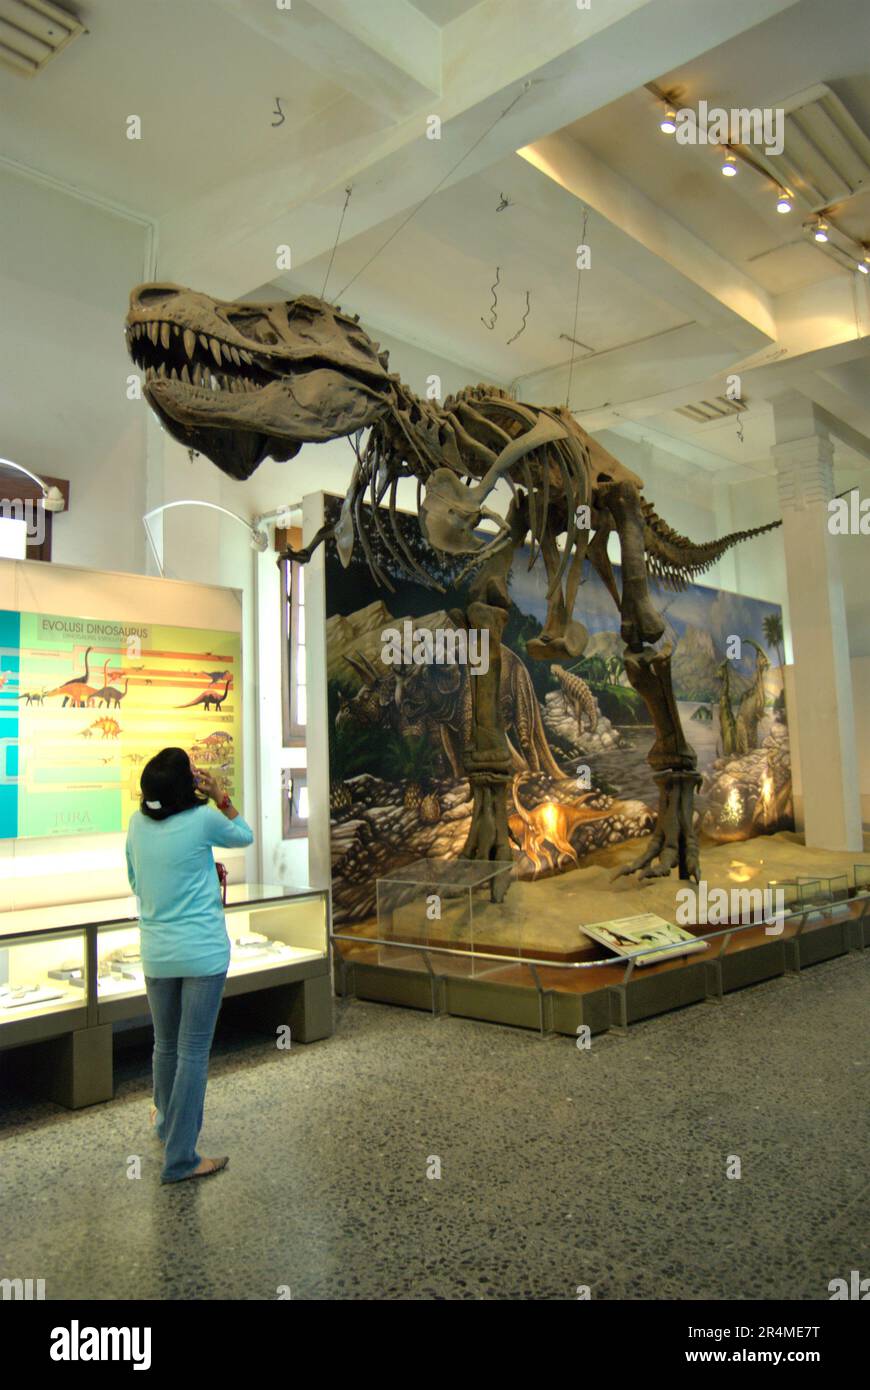 Eine Besucherin achtet auf die Rekonstruktion eines Tyrannosaurus rex im Geologiemuseum in Bandung, West-Java, Indonesien. Stockfoto